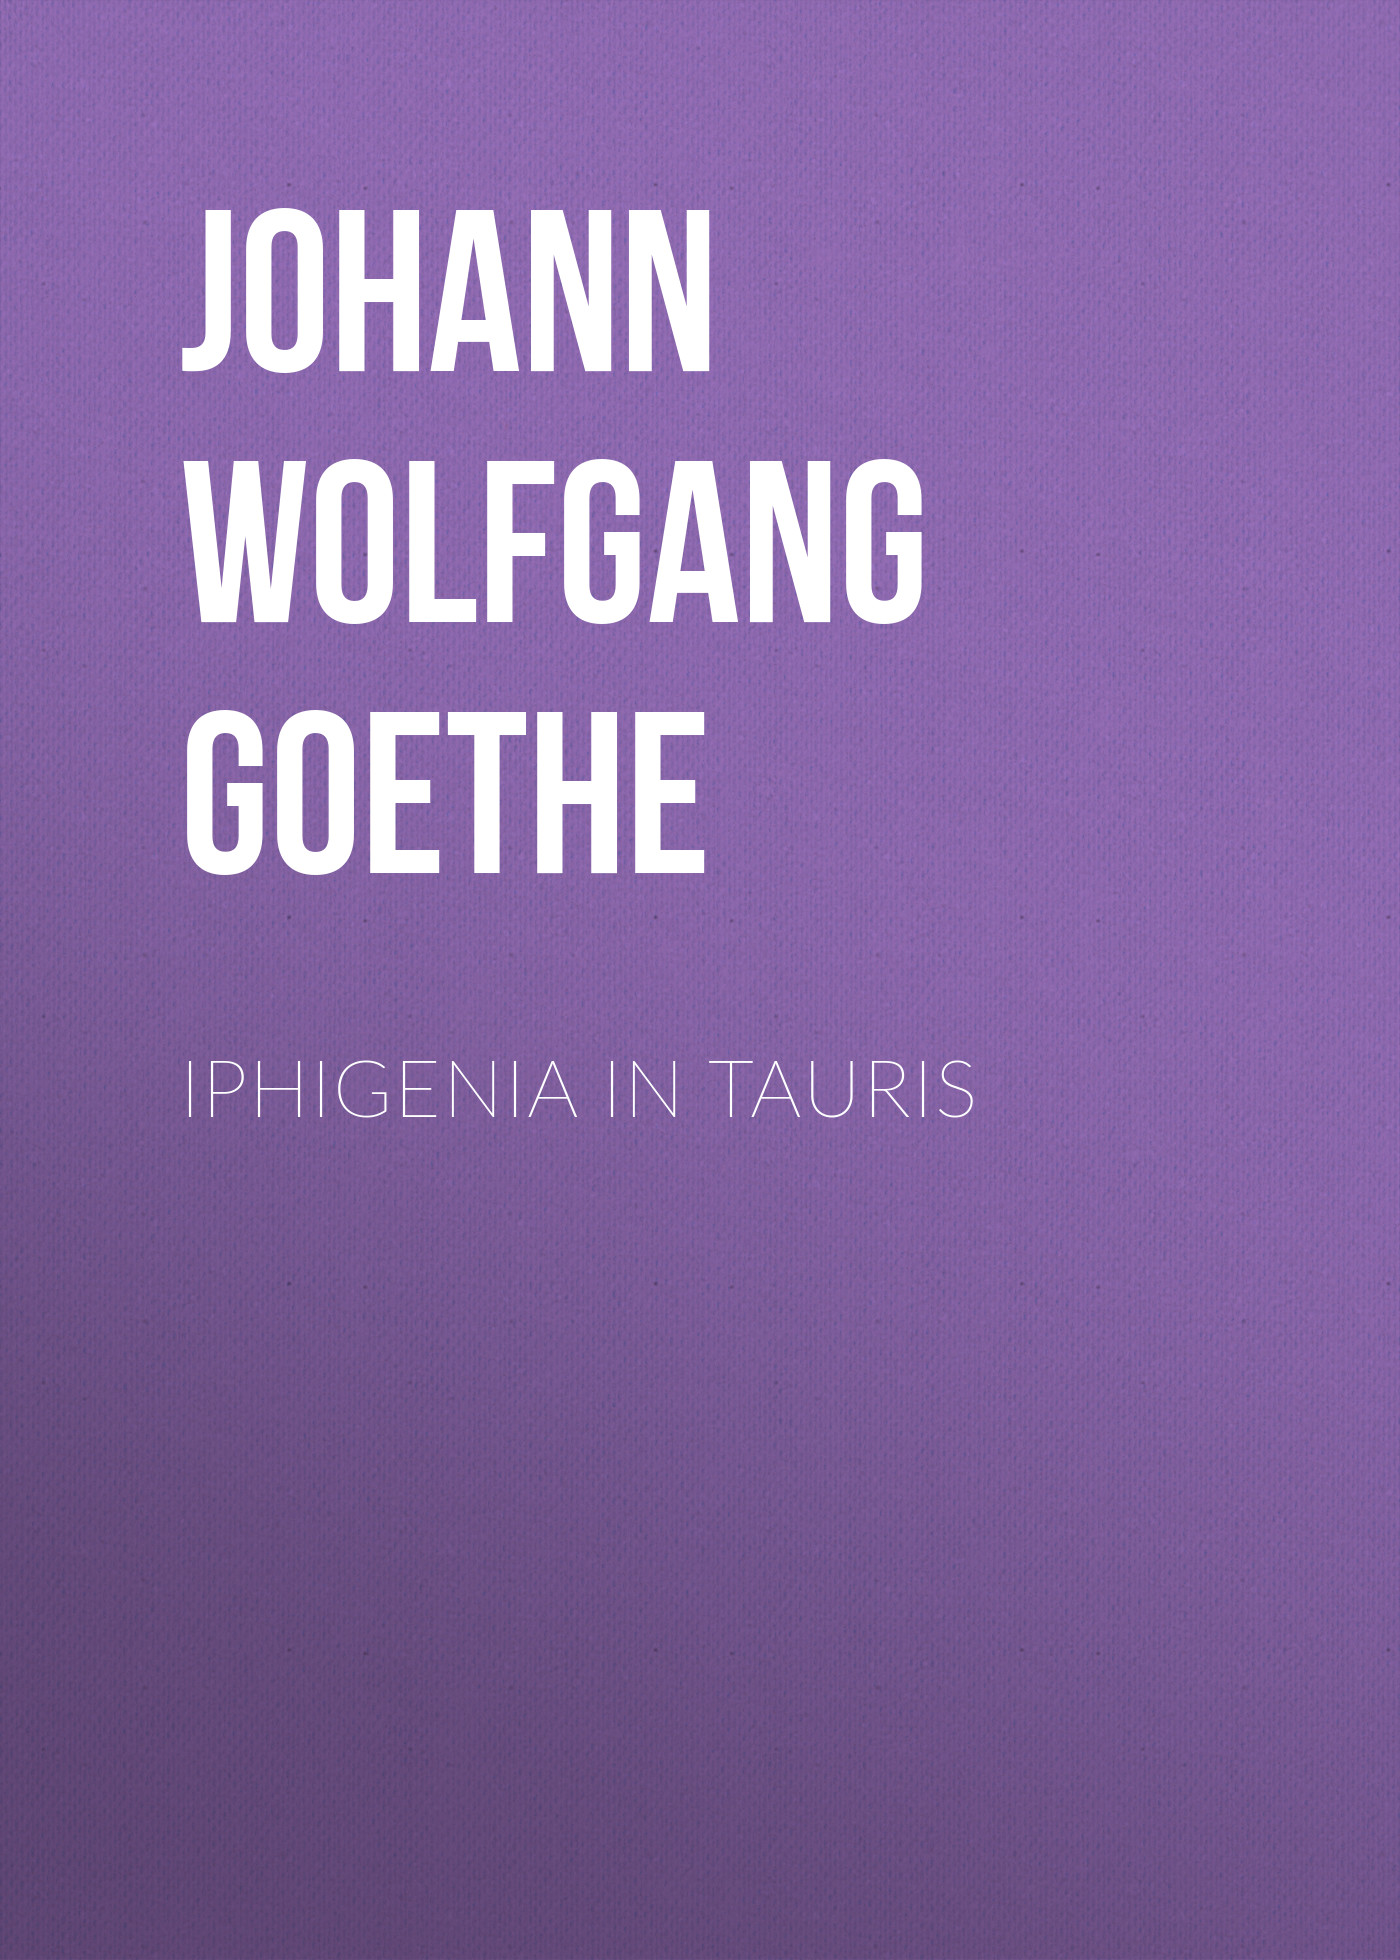 Книга Iphigenia in Tauris из серии , созданная Johann von Goethe, может относится к жанру Зарубежная старинная литература, Зарубежная классика. Стоимость электронной книги Iphigenia in Tauris с идентификатором 25202487 составляет 0 руб.